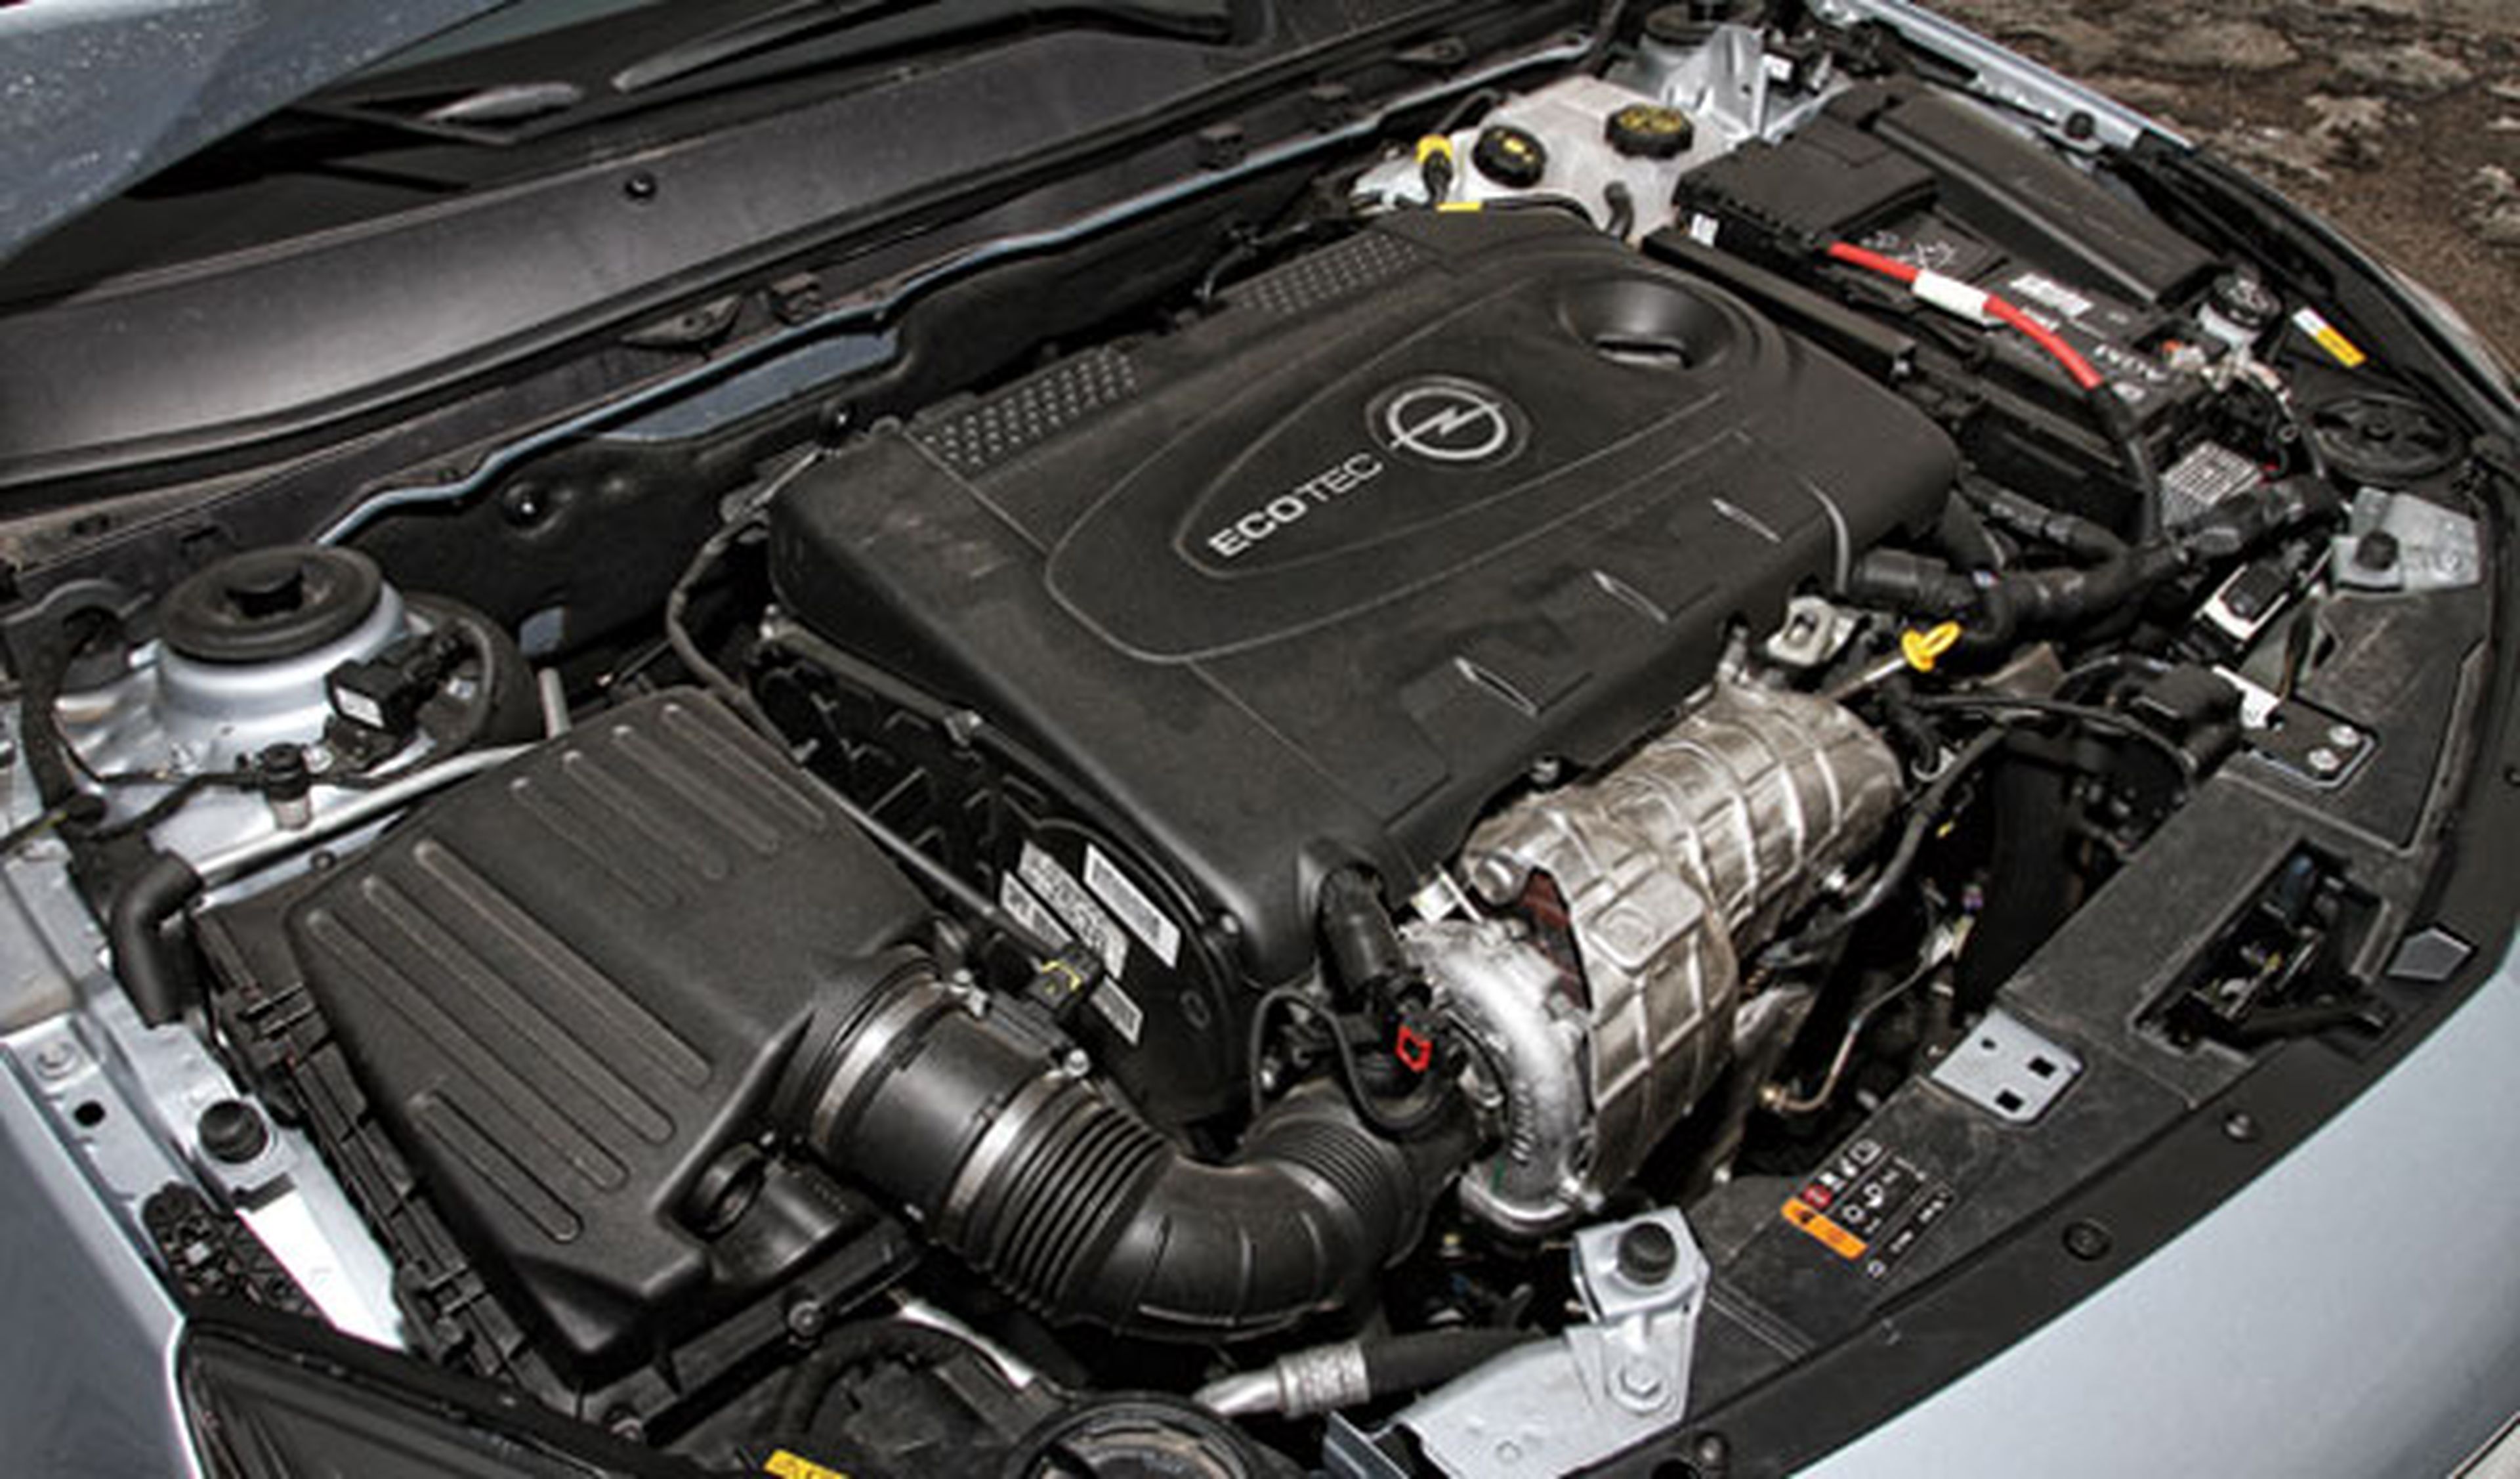 Opel Insignia, ahora con más novedades y motor 2.0 CDTI BiTurbo de